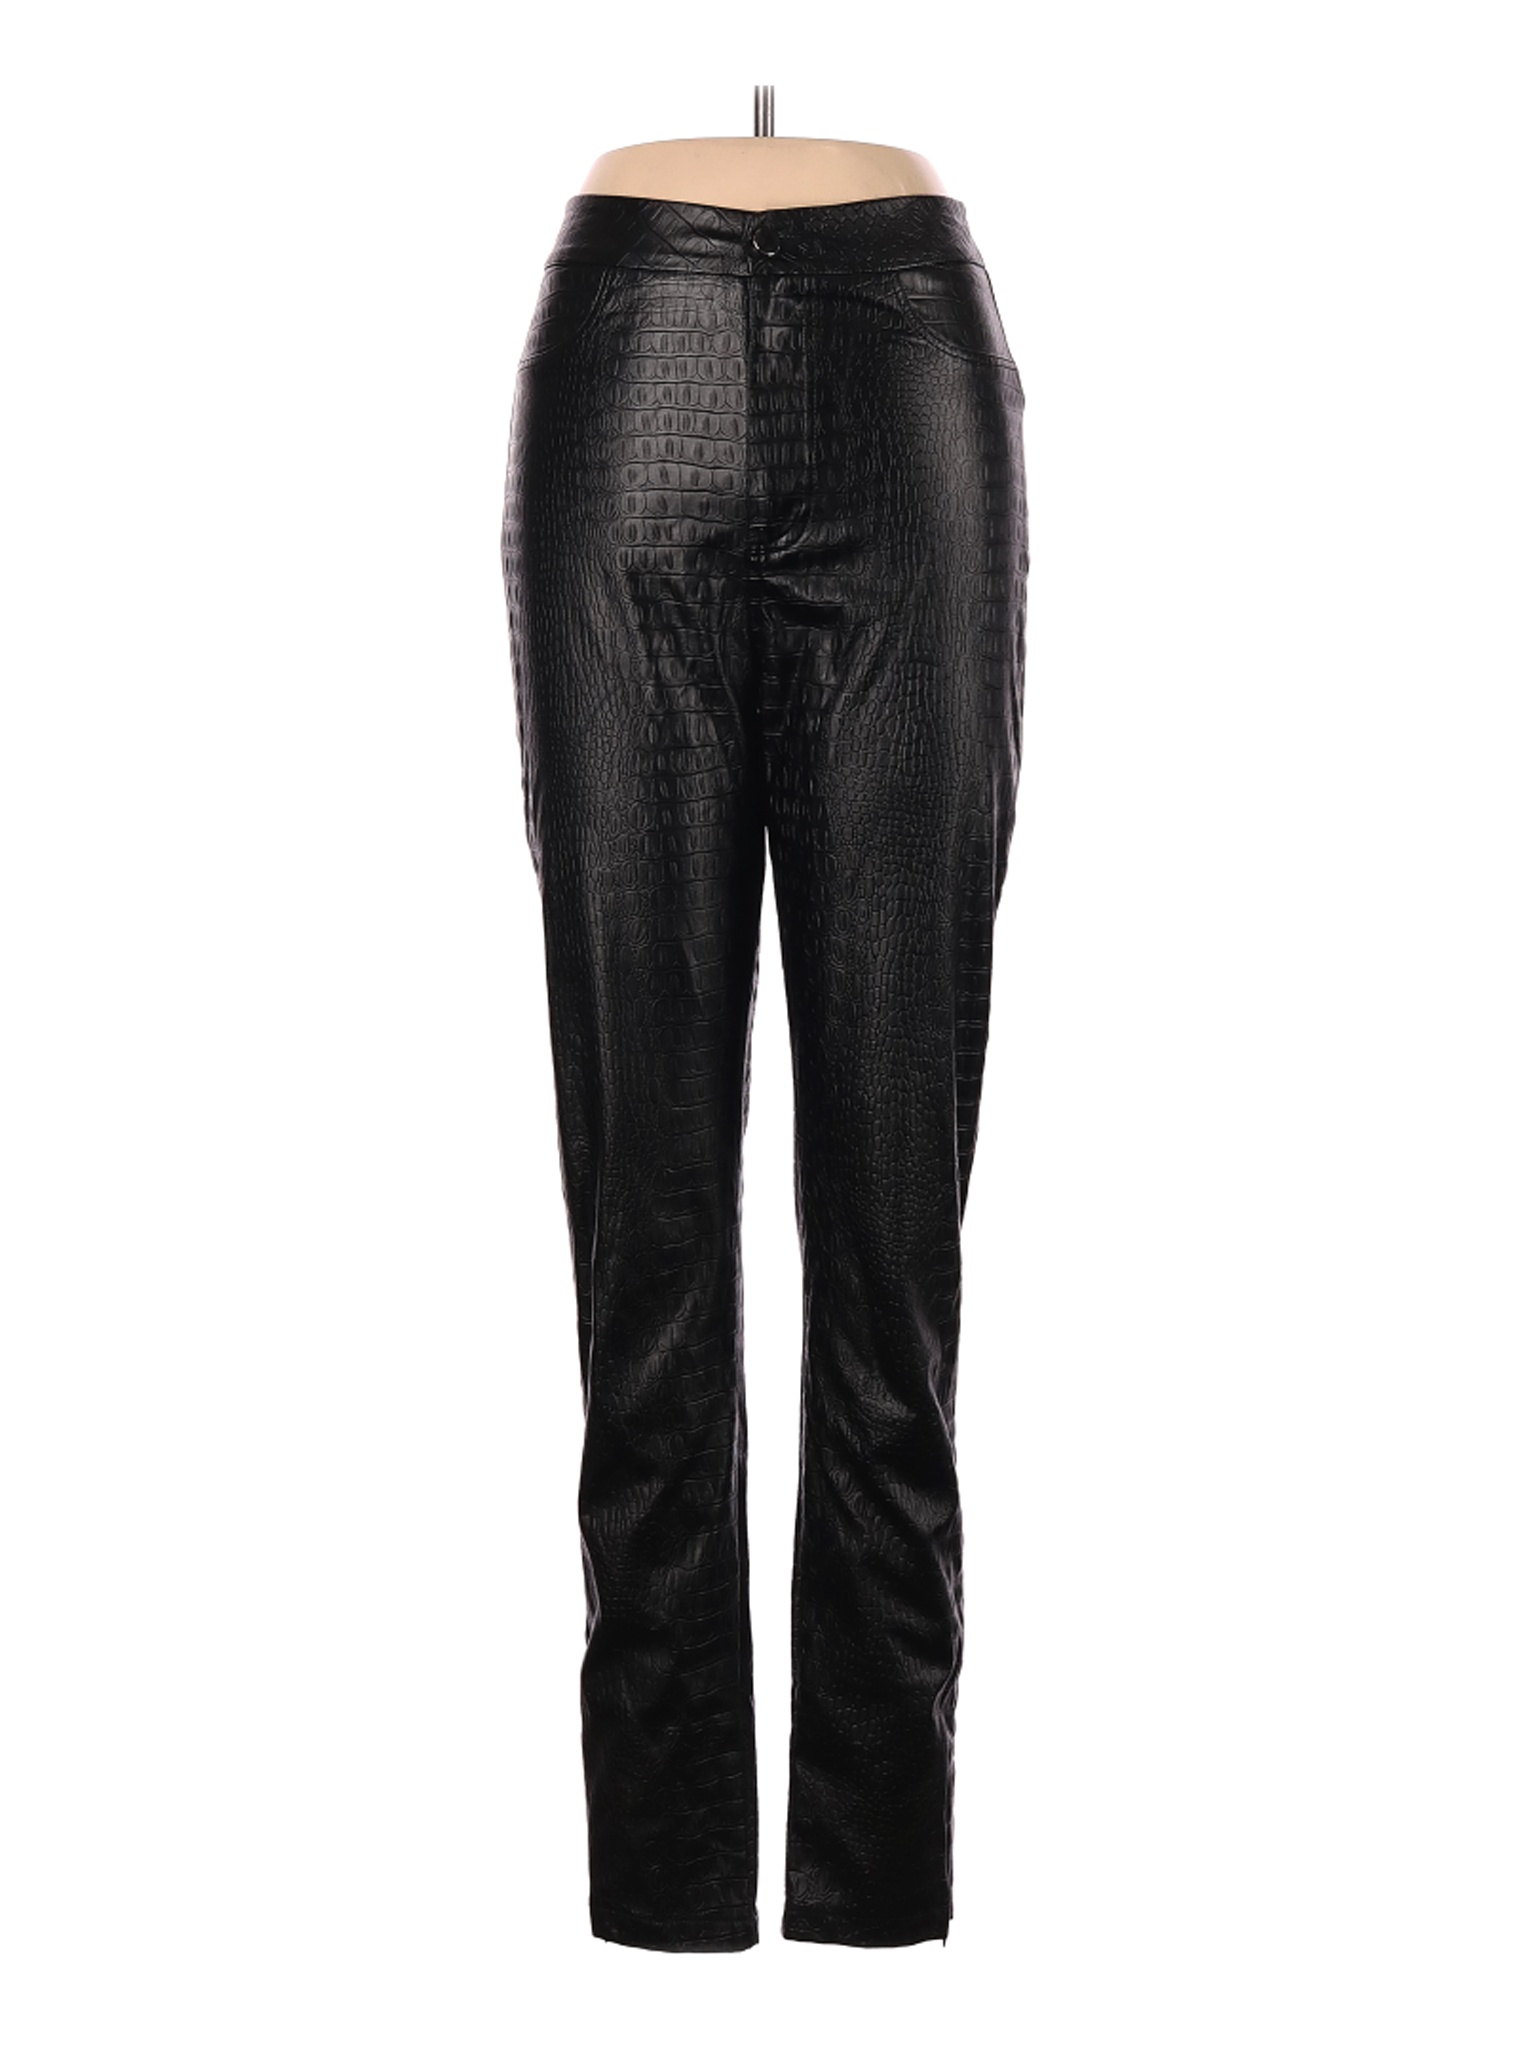 Akira Women Black Faux Leather Pants 7 | eBay